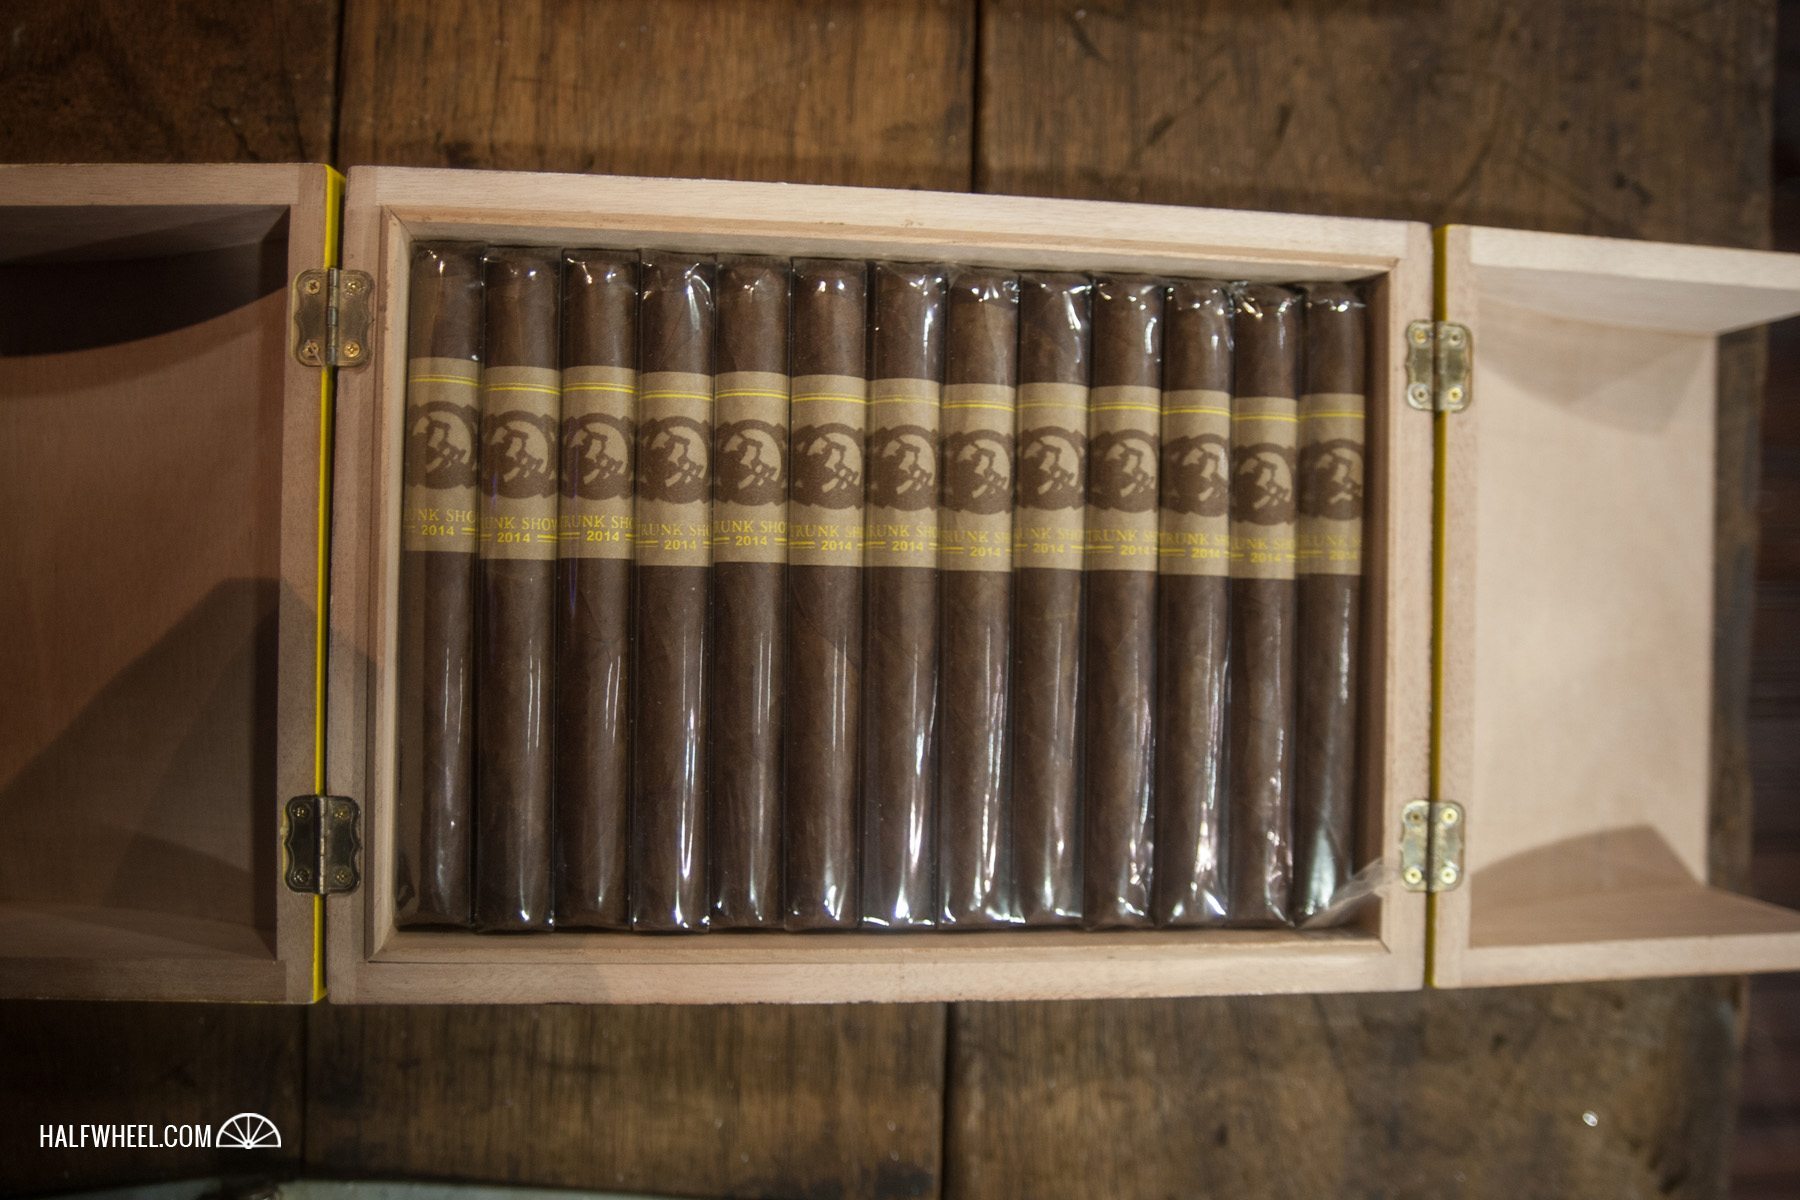 General Cigar IPCPR 2014-14